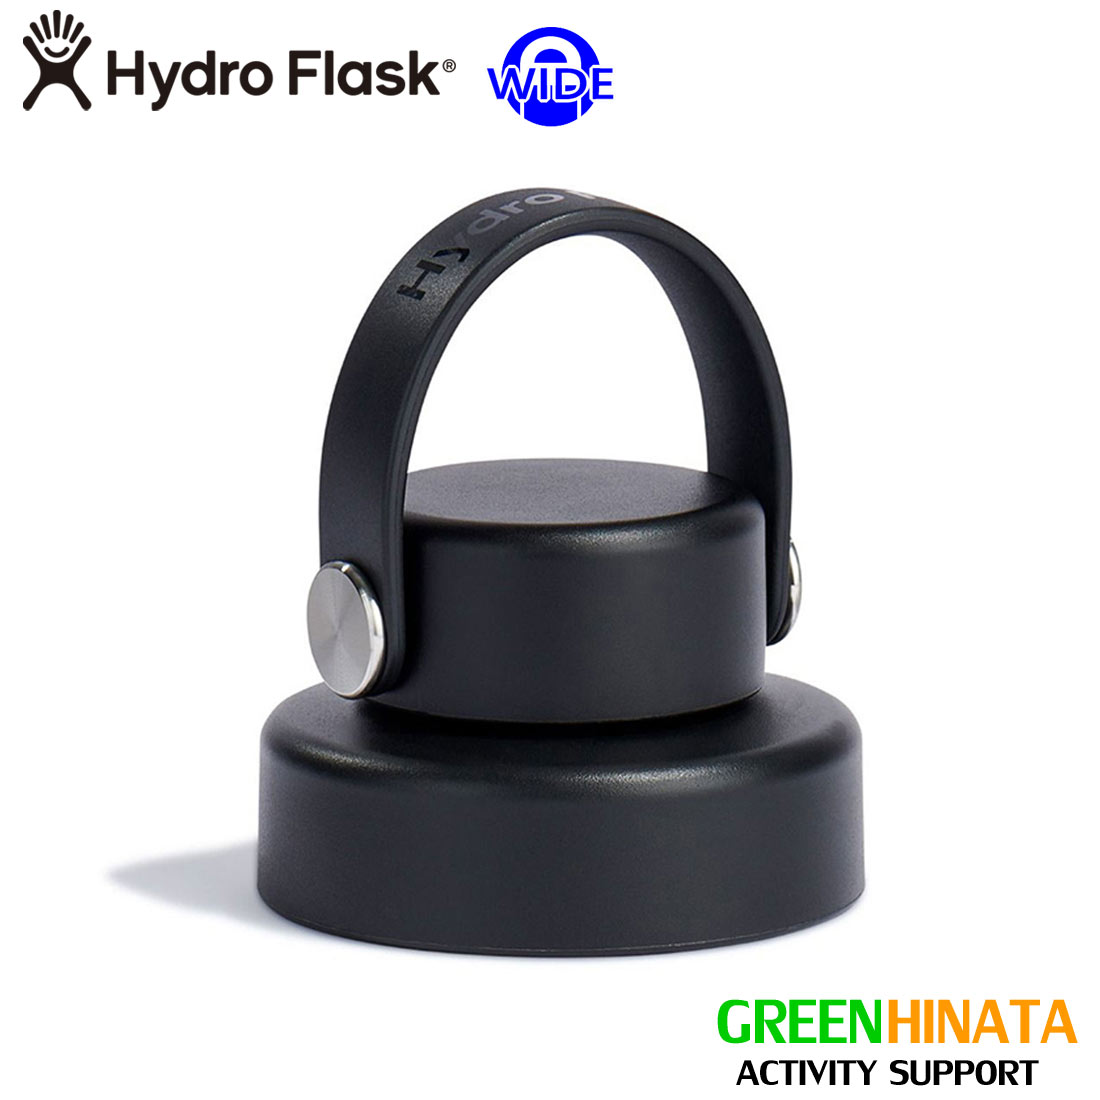  ハイドロフラスク ワイドフレックス チャグキャップ 保温 保冷 ボトル 水筒オプション HydroFlask WIDE FLEX CHUG CAP